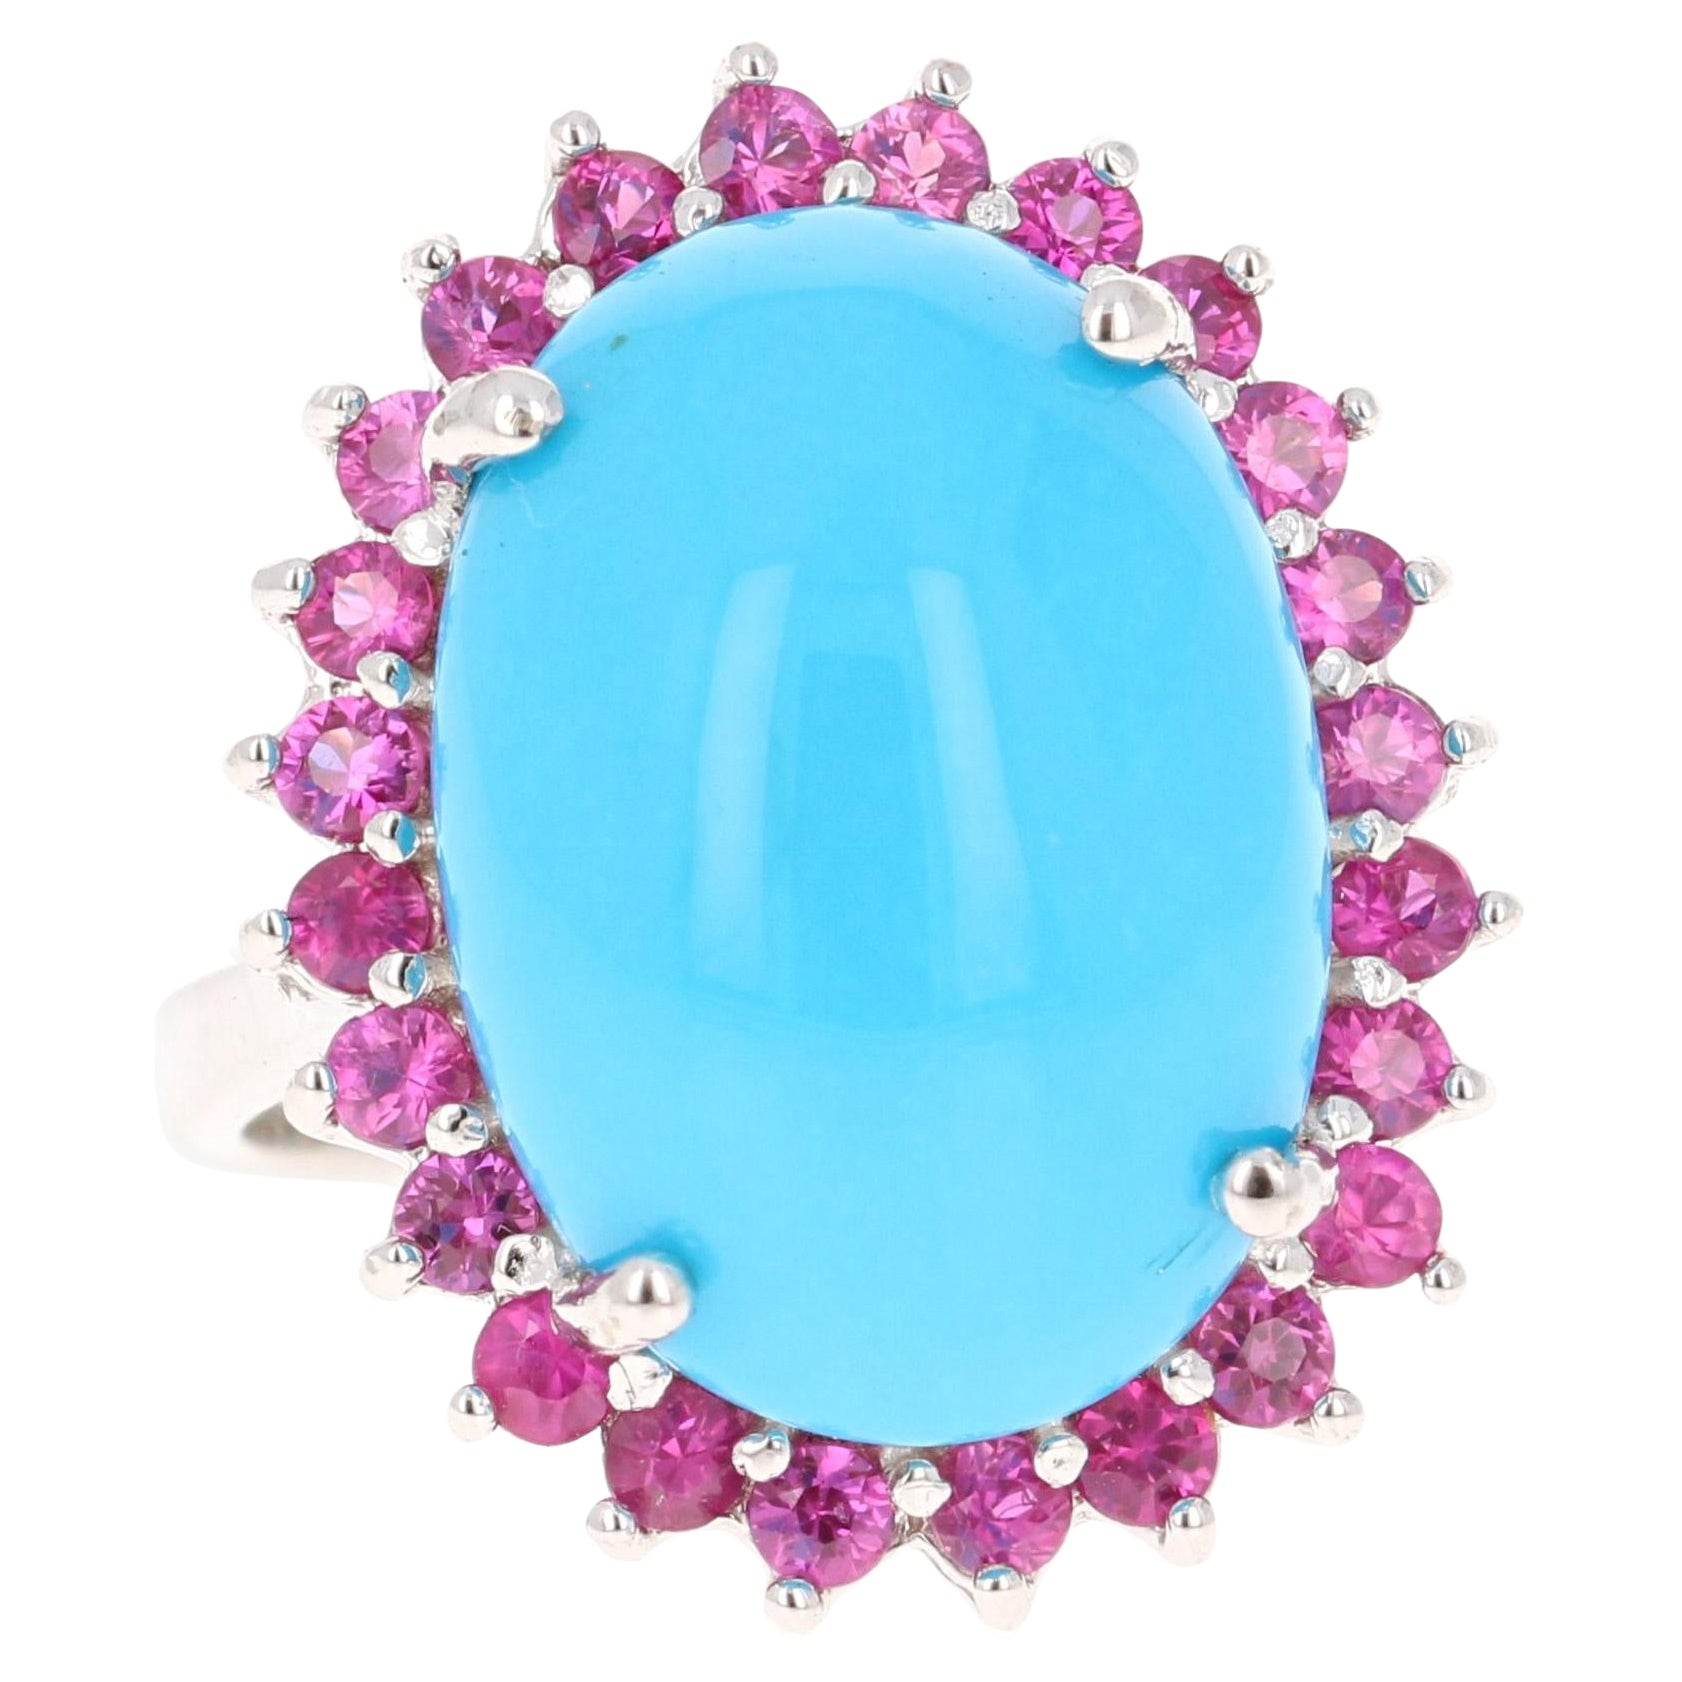 10.09 Carat Turquoise Pink Sapphire Cocktail Ring 14 Karat White Gold Ring